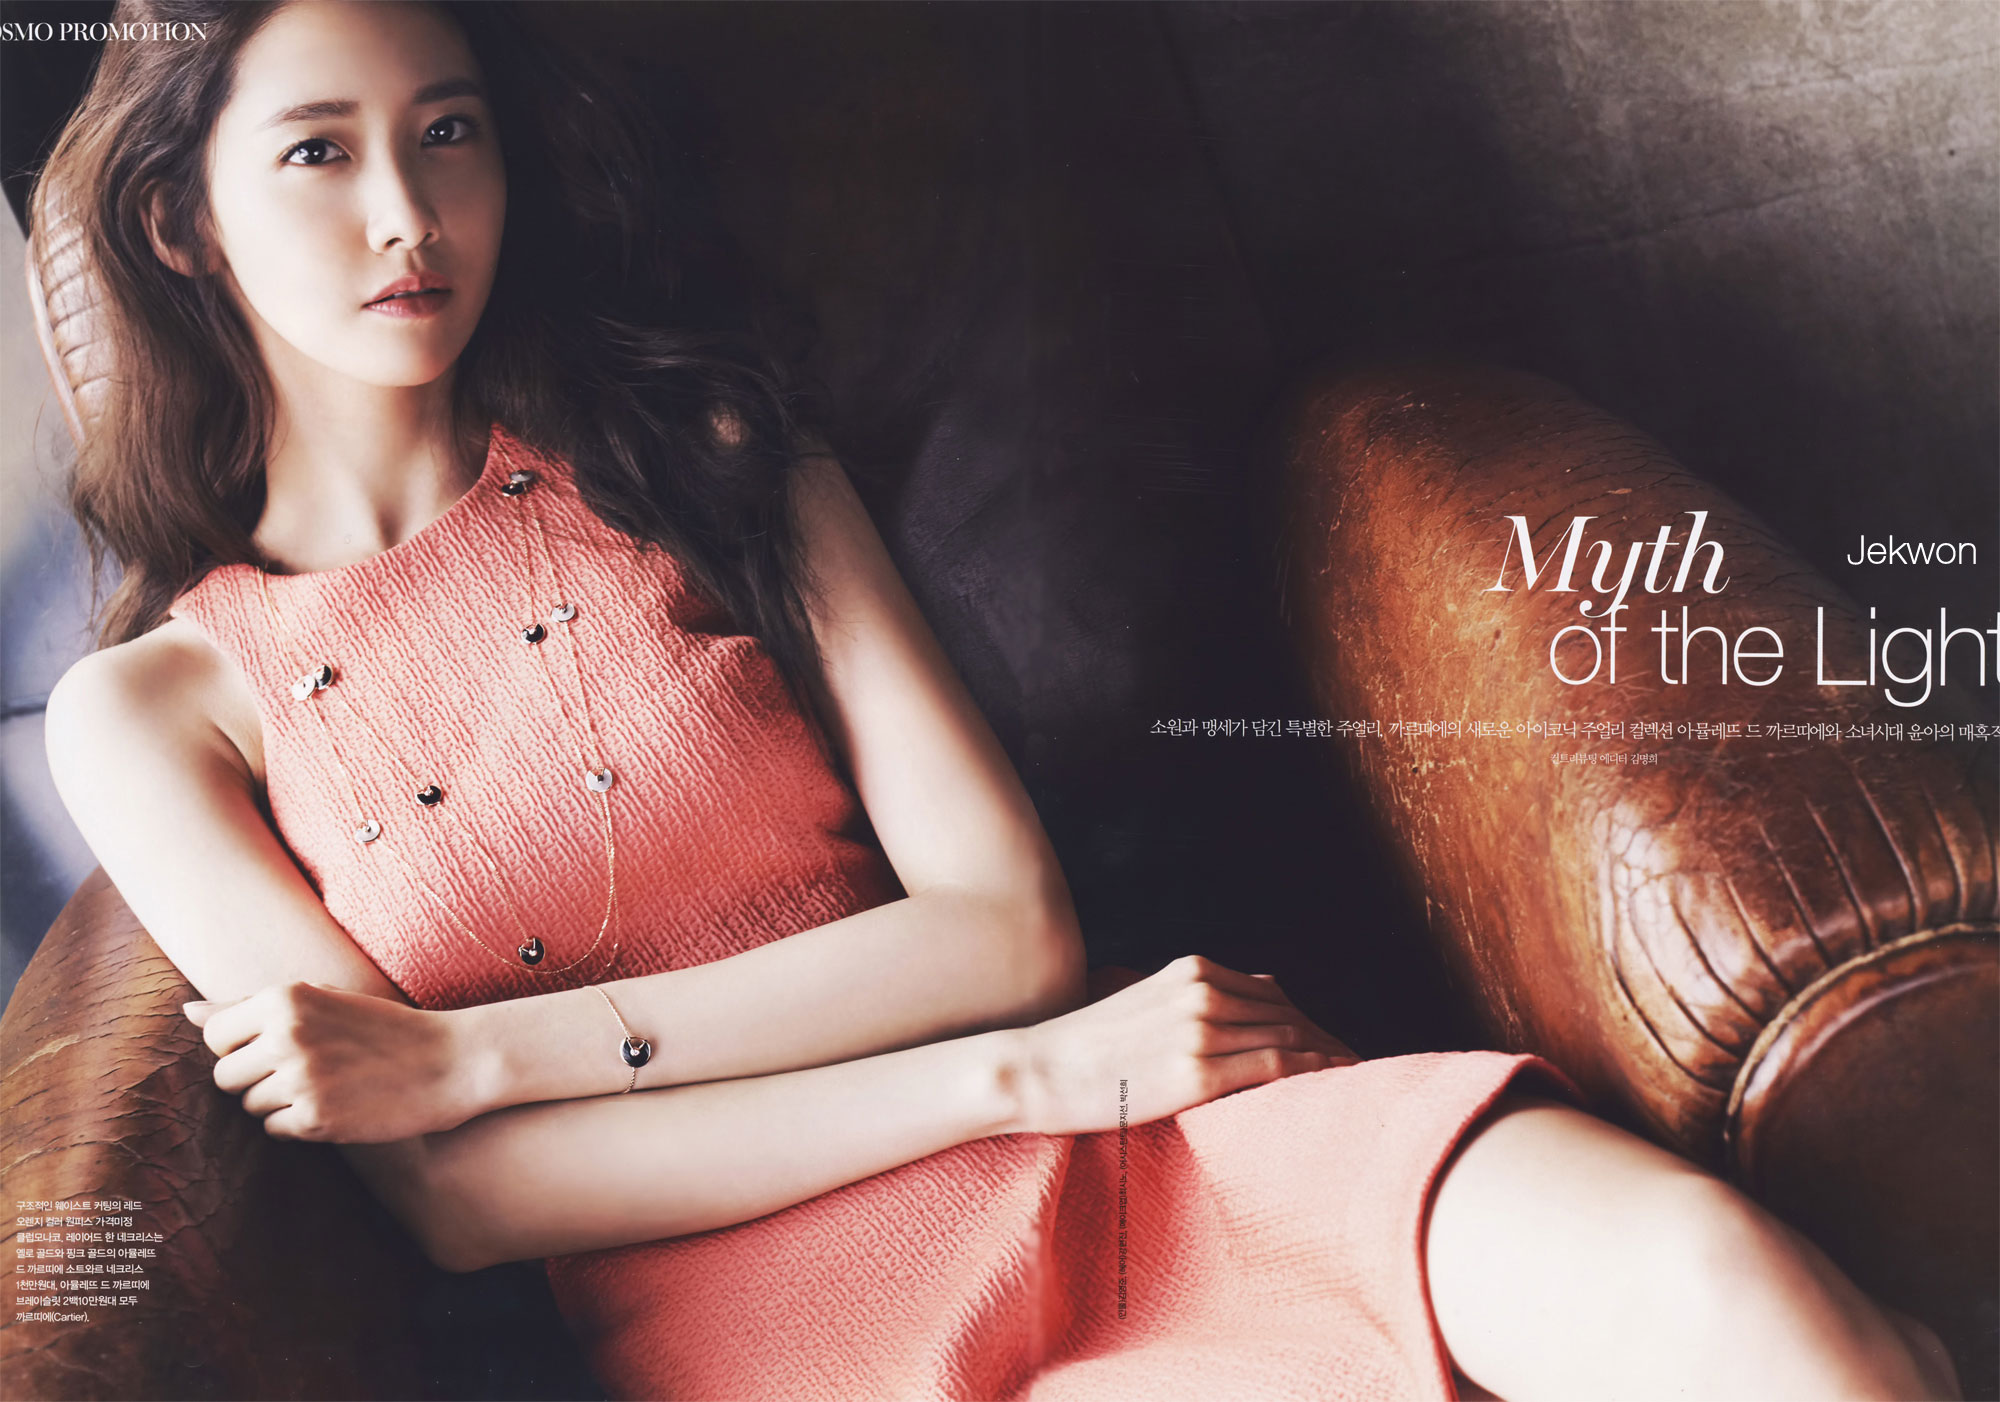 Yoona Cosmopolitan Magazine